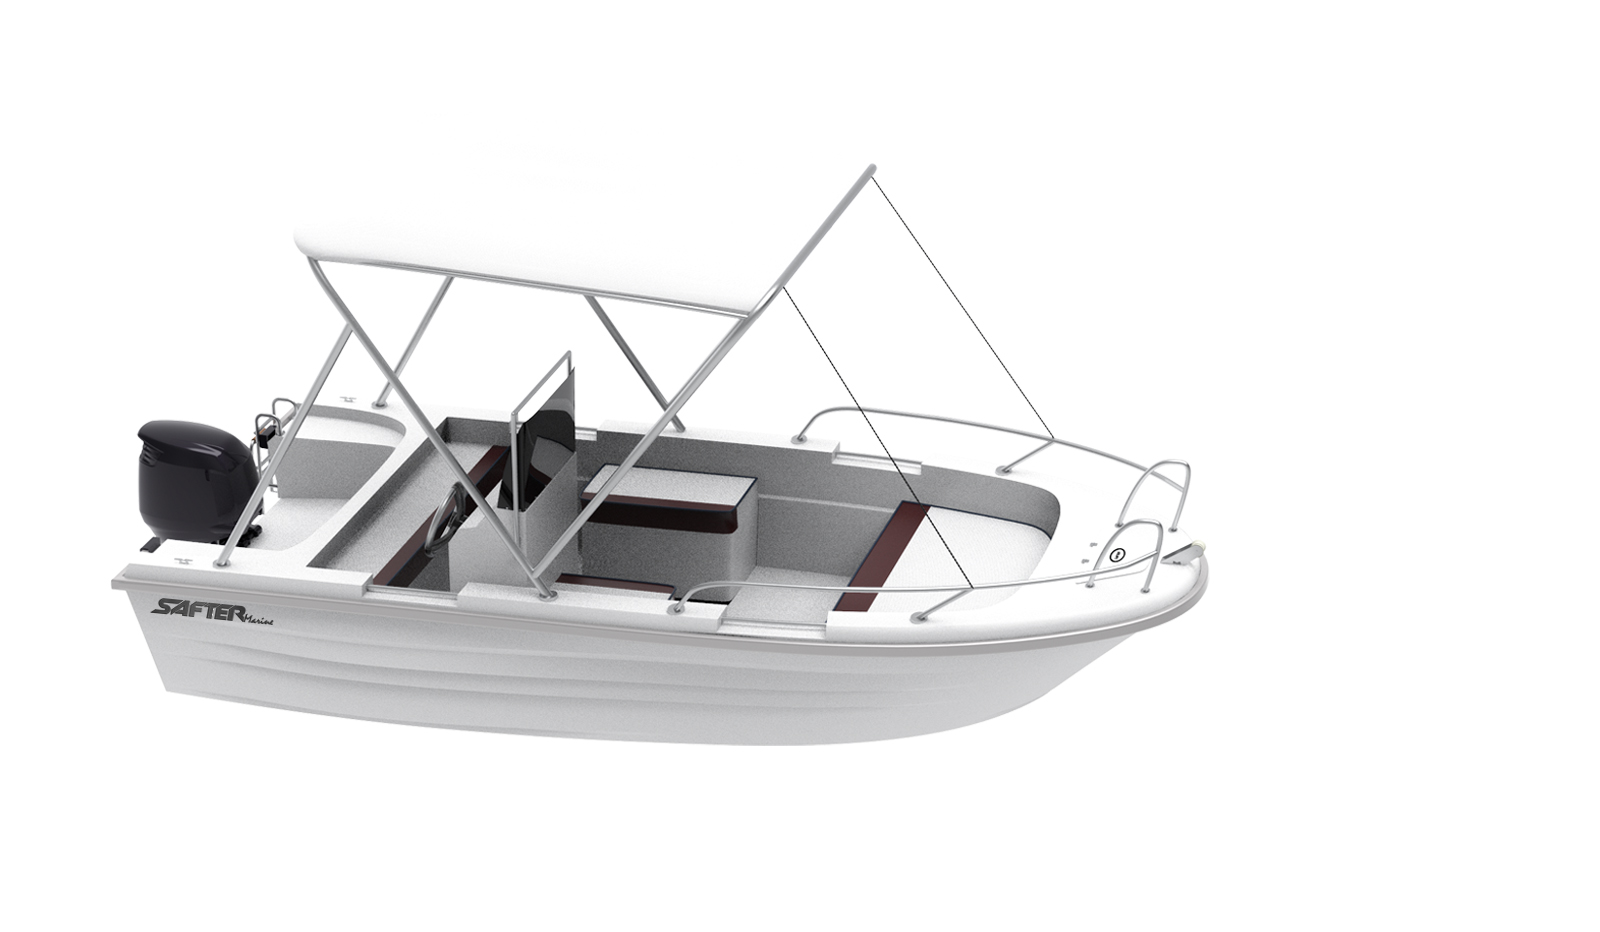 256-safter-marine-465-fiber-boat-16435736422674.jpg